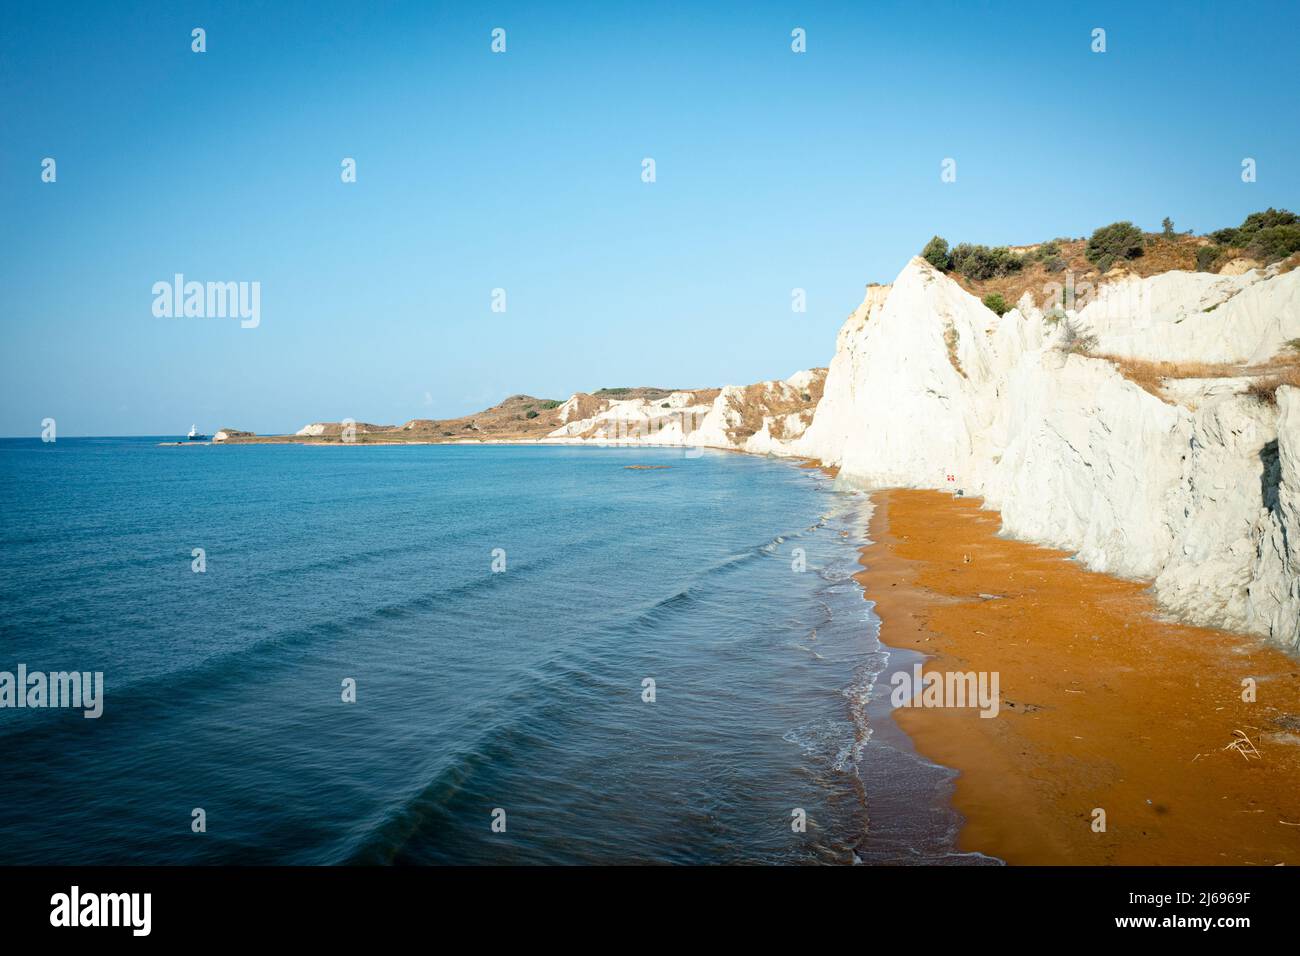 Lever de soleil sur le sable doré de la plage de Xi entouré de majestueuses falaises calcaires, Kefalonia, Iles Ioniennes, Iles grecques, Grèce, Europe Banque D'Images